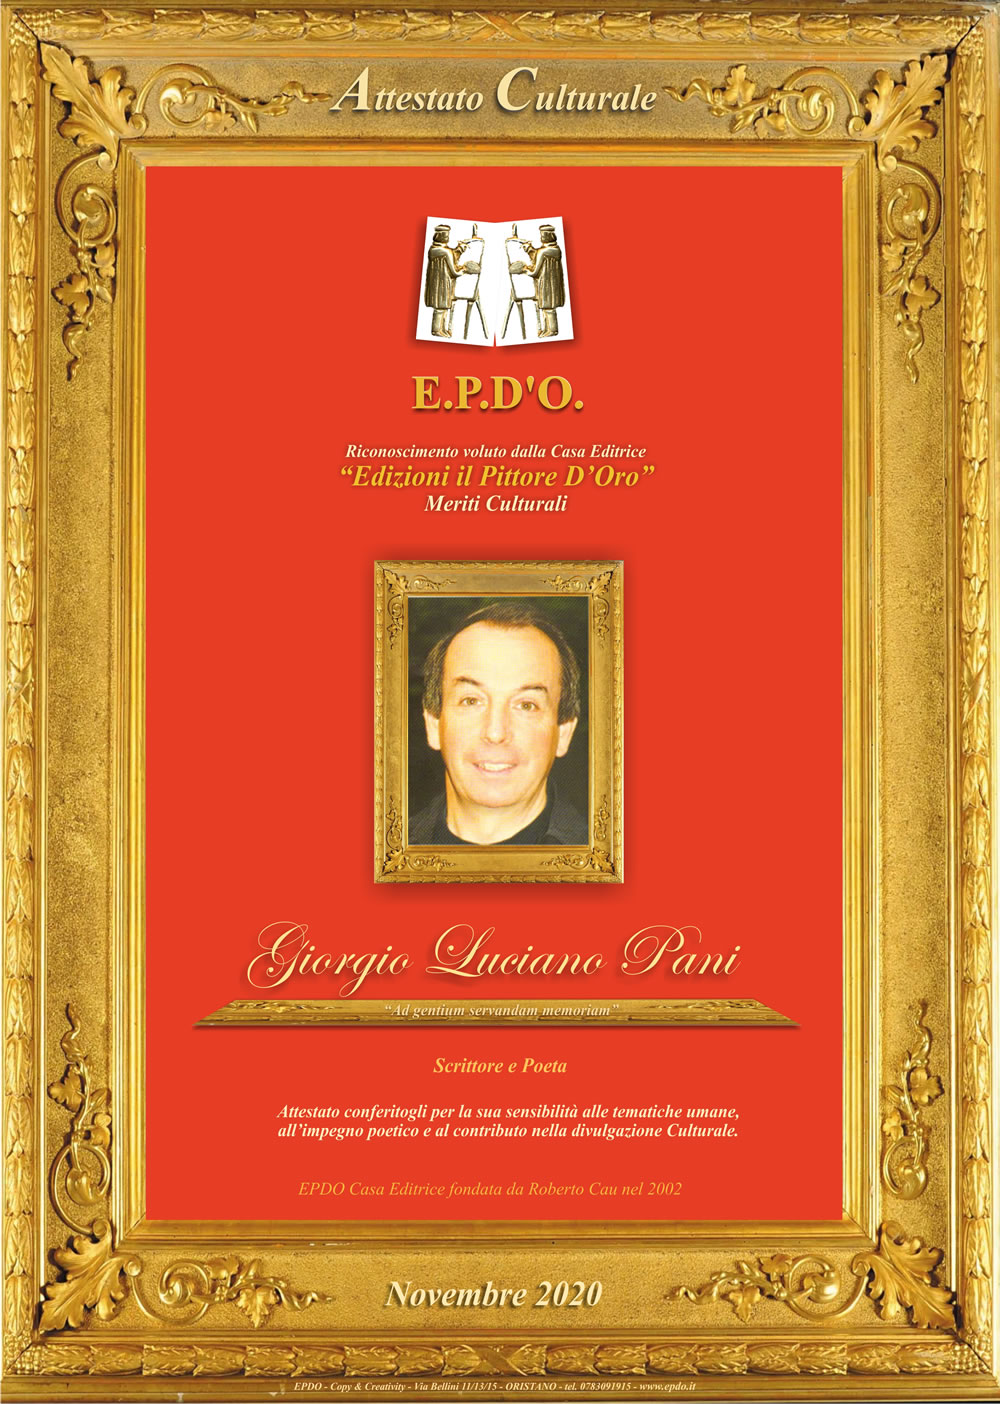 EPDO - Attestato Culturale Giorgio Luciano Pani